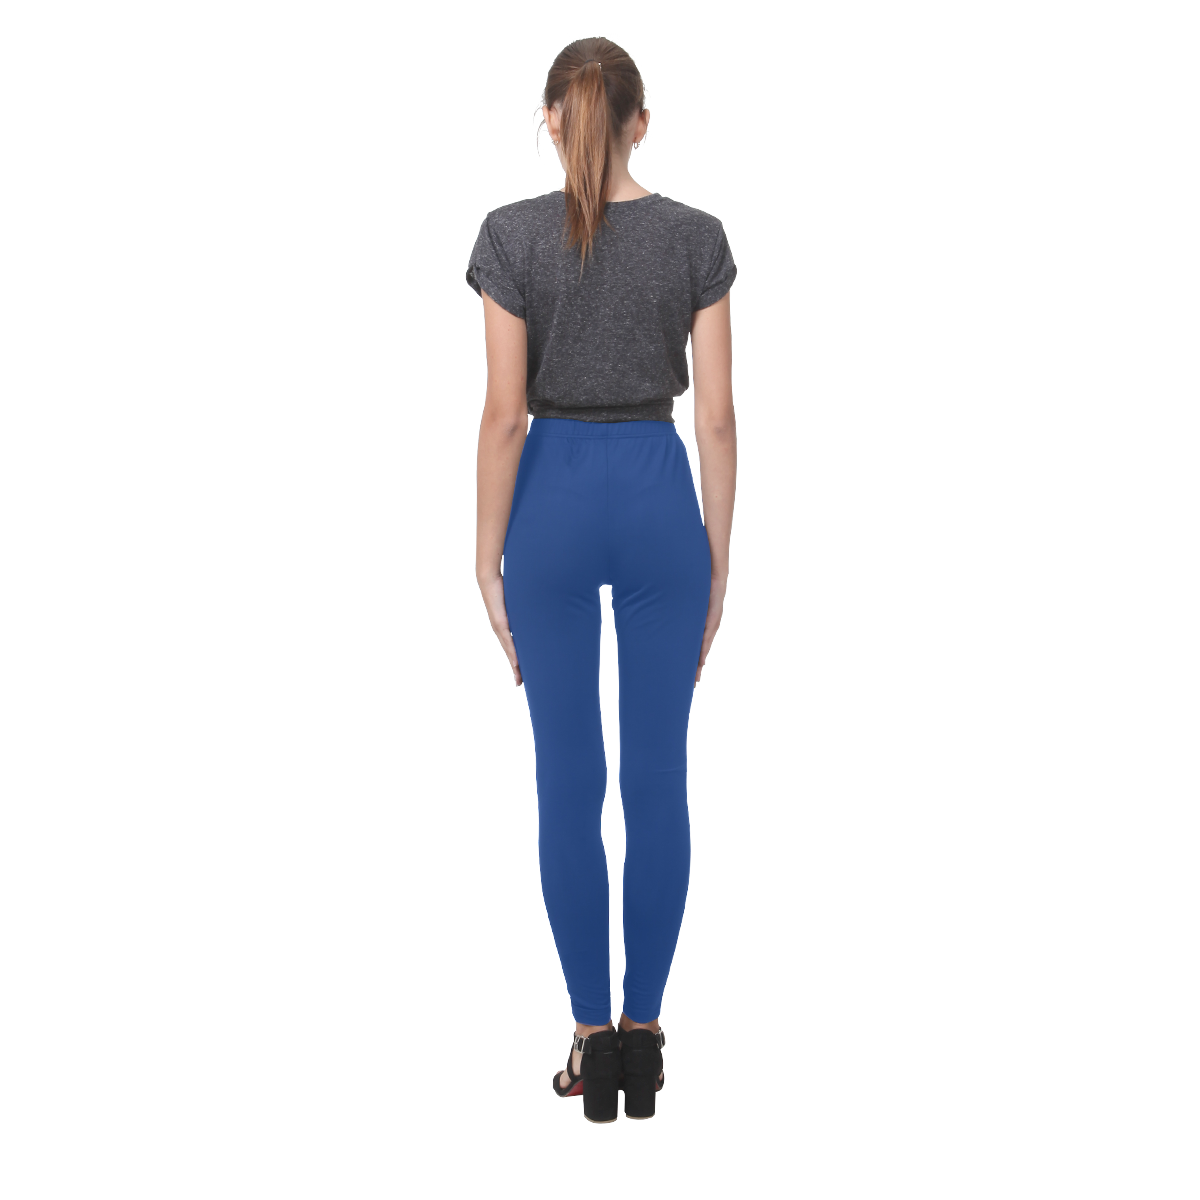 New in shop. Designers leggings : blue art edition 2016 Cassandra Women's Leggings (Model L01)